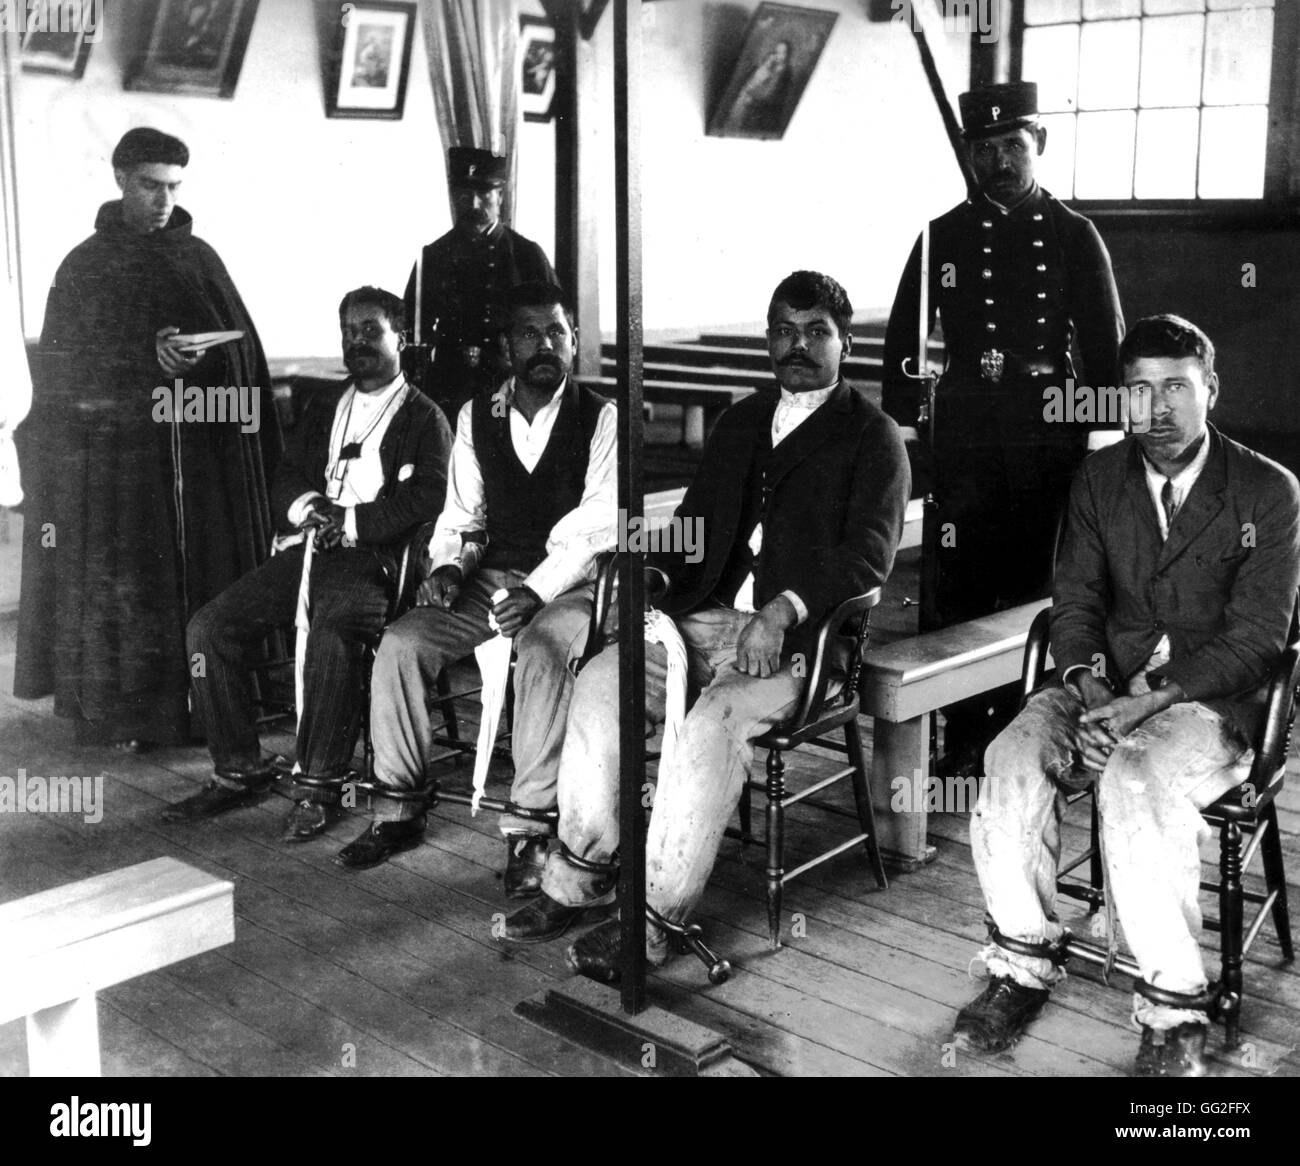 Santiago, les hommes condamnés à mort et un priester c. 1900 Chili Banque D'Images